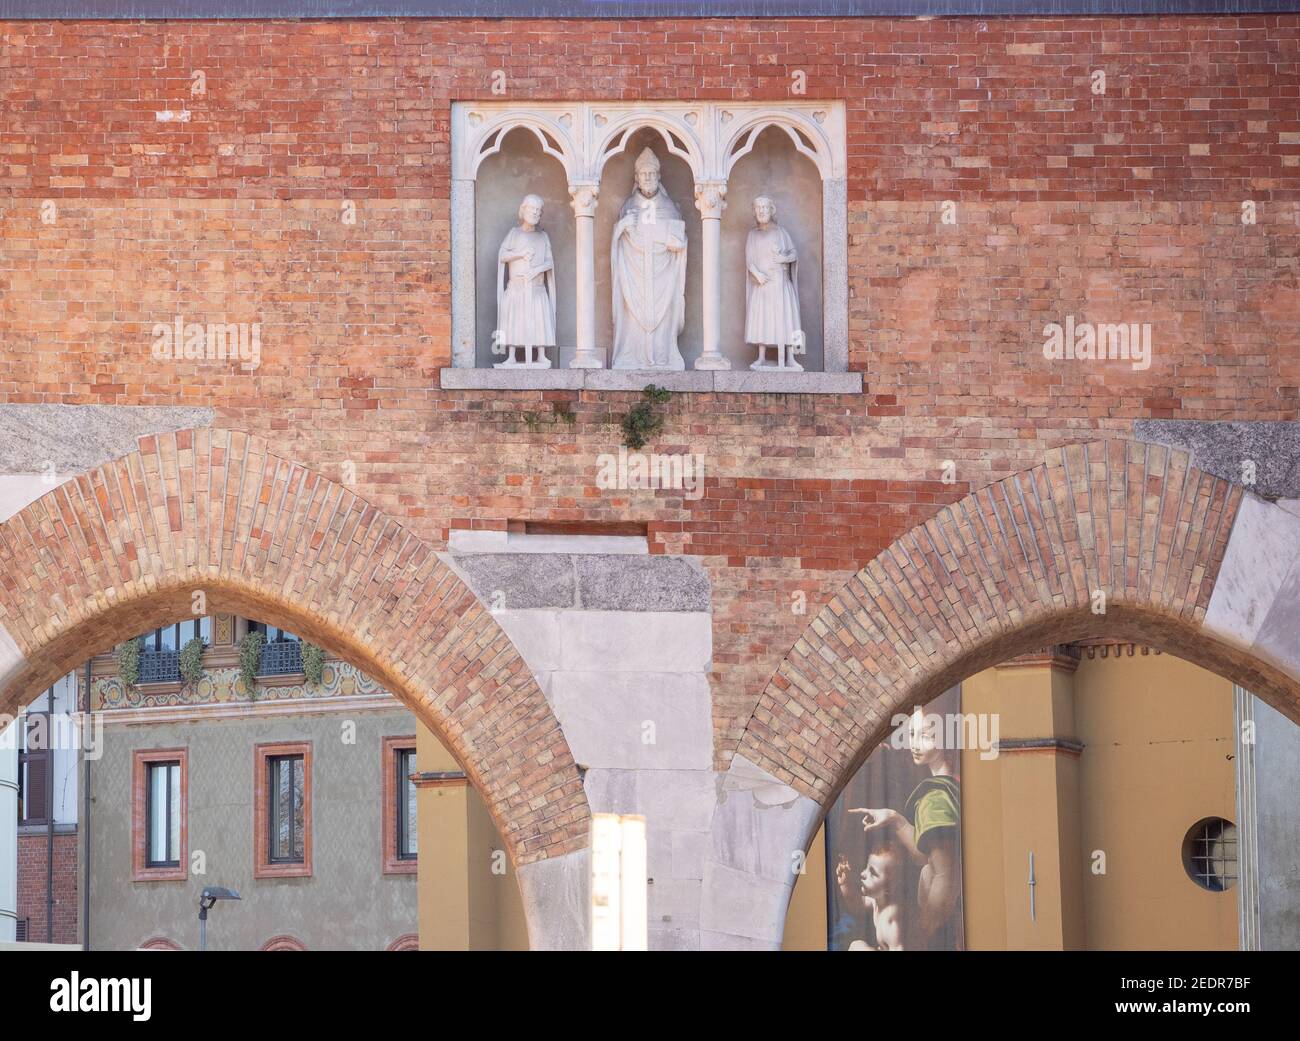 Pusterla di Sant'Ambrogio, porta sulla pianta medievale delle mura cittadine, eretta nel 1939 a imitazione dell'antica che fu distrutta.Milano, essa Foto Stock